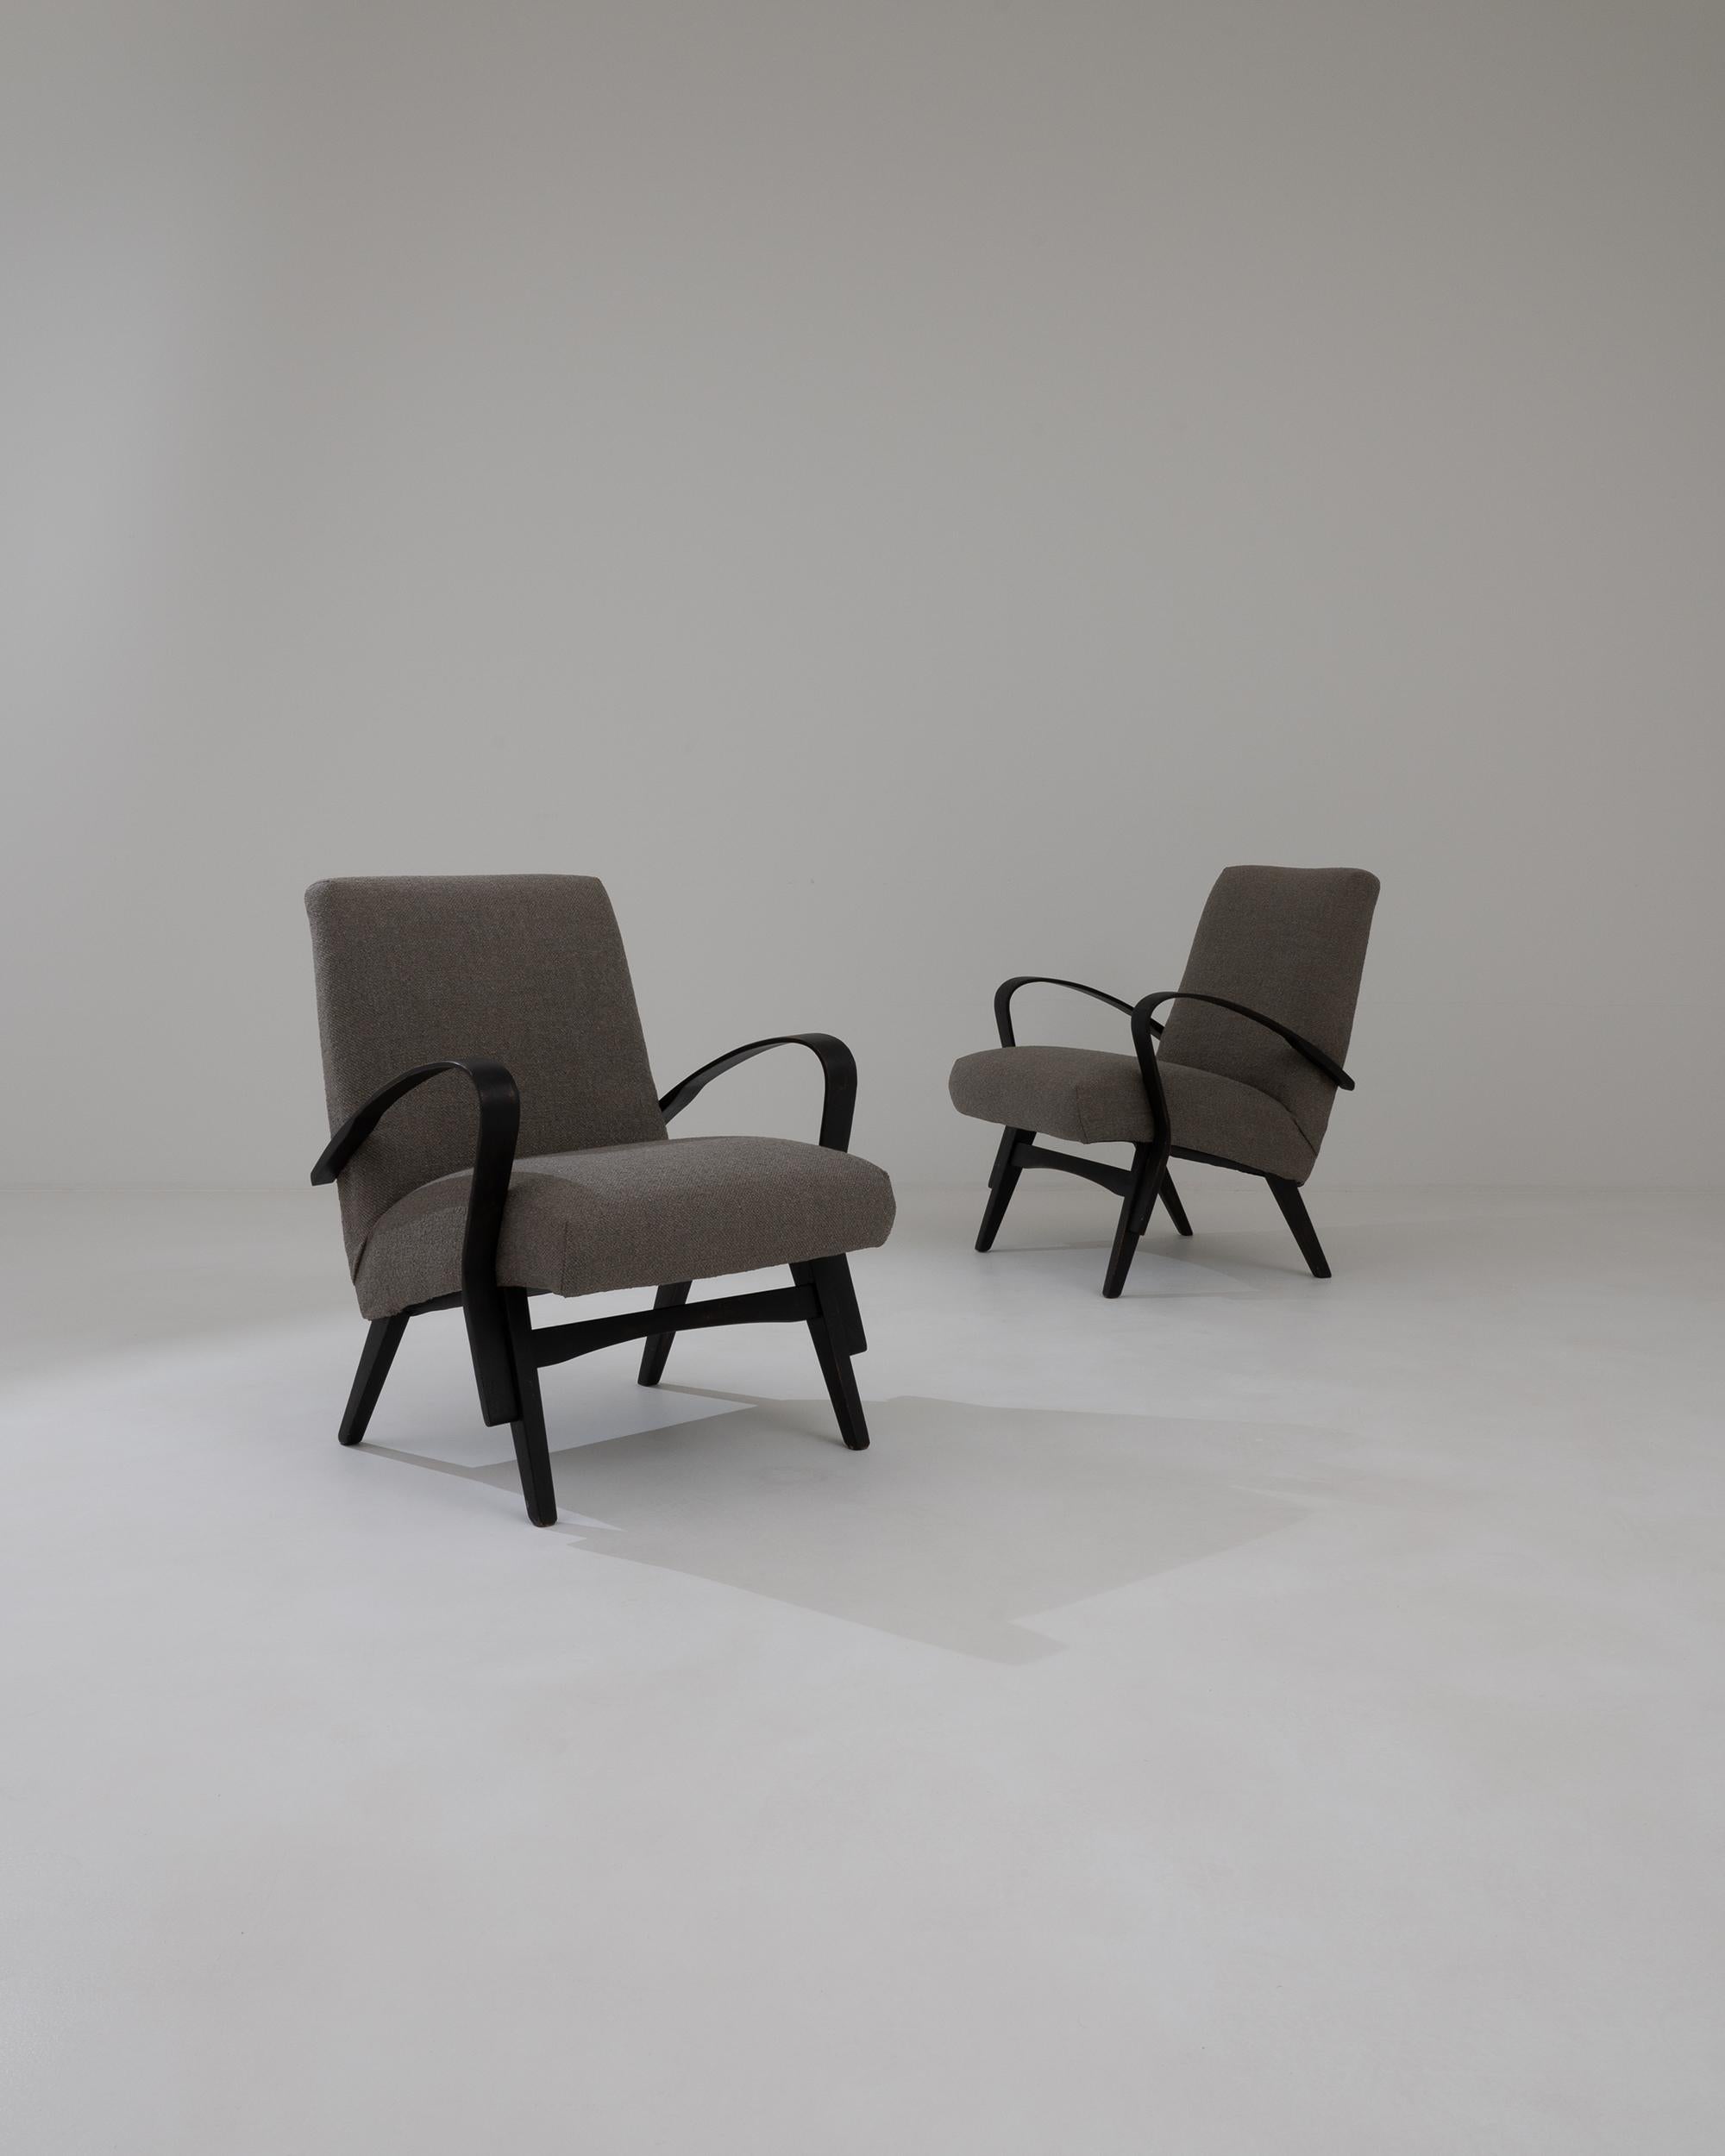 Ein Paar gepolsterte Sessel des tschechischen Möbelherstellers Tatra. Dem Designer František Jirák zugeschrieben, der für seine markanten Vitrinen und Wandschränke sowie für seine verspielten Kompaktmöbel bekannt ist, die das tschechische Design der